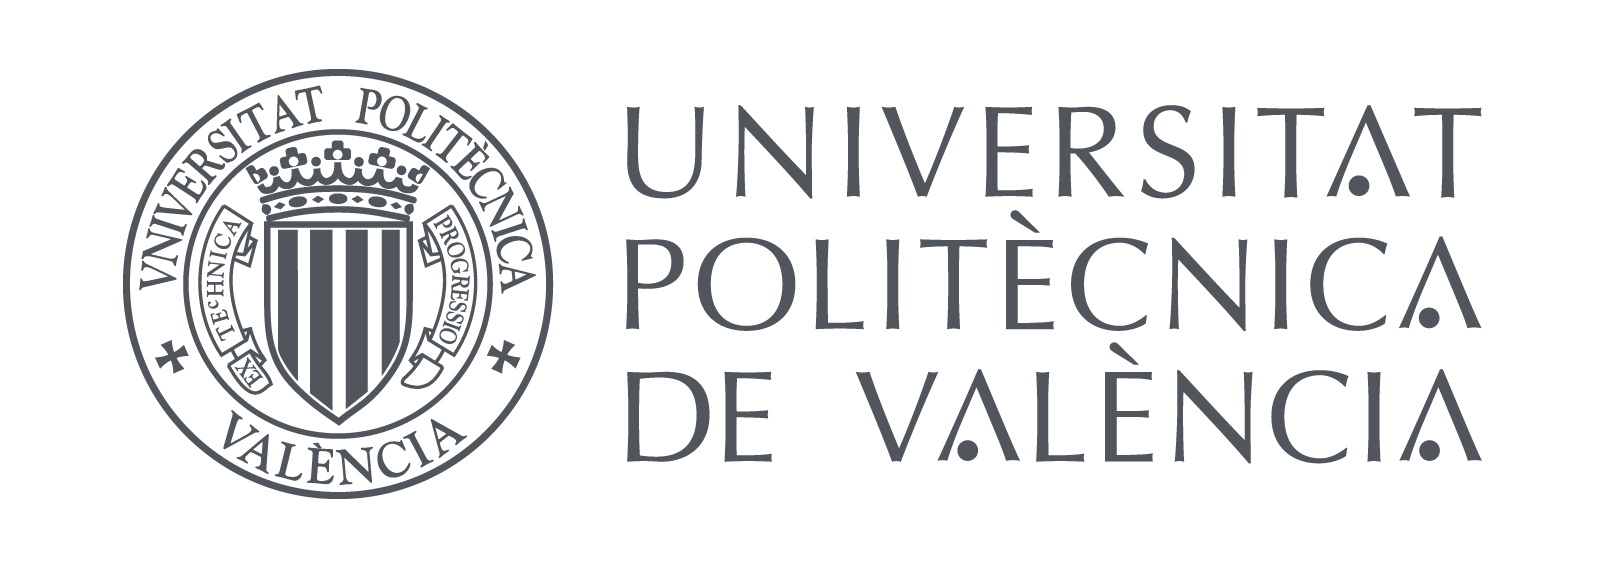 Universidad Politécnica de Valencia – Cluster de la Energía